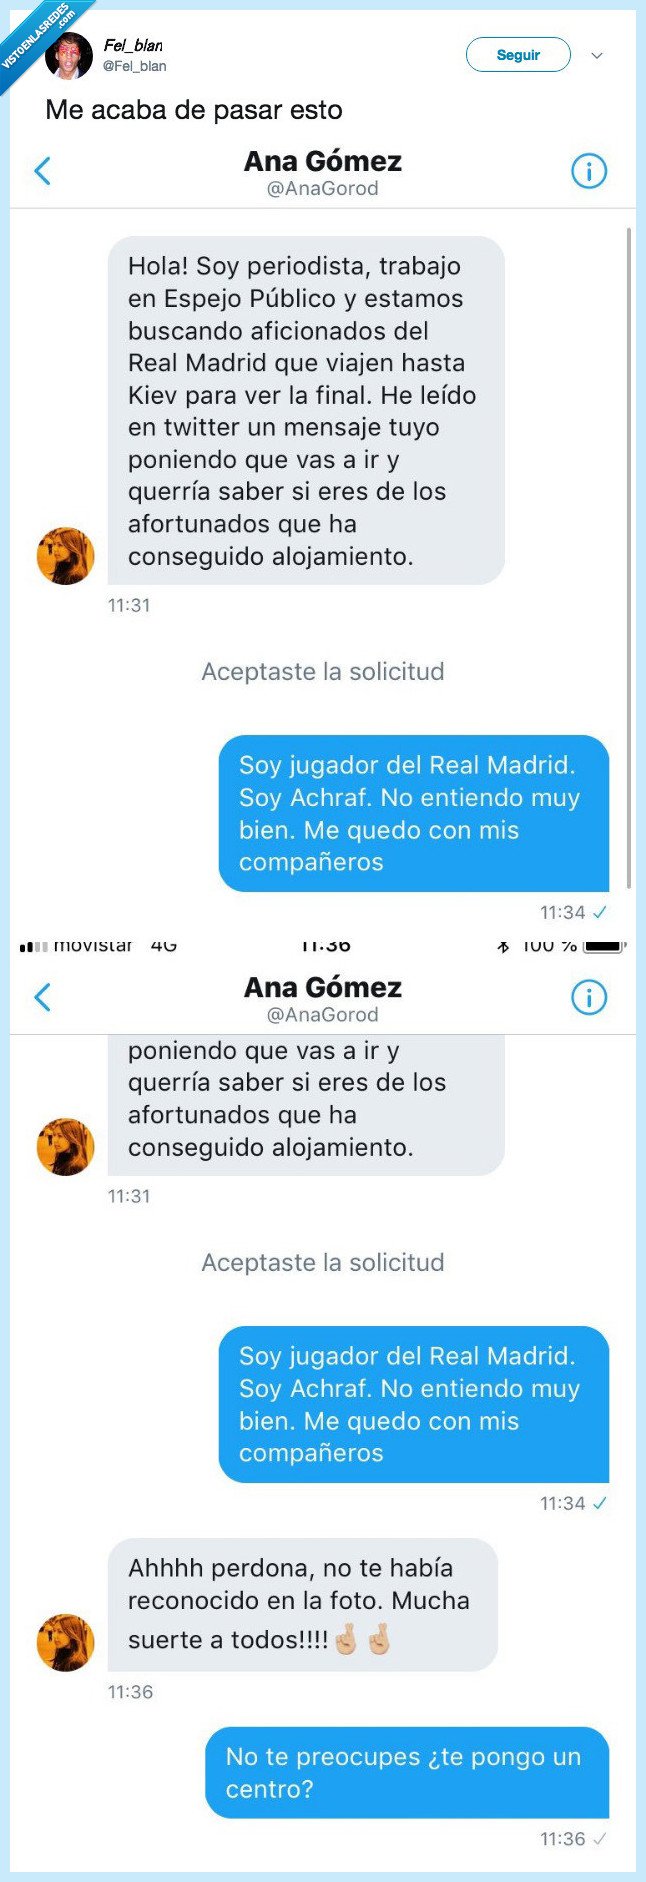 488670 - Una periodista de Espejo Público confunde a un Twittero con un jugador del Real Madrid, por @Fel_blan